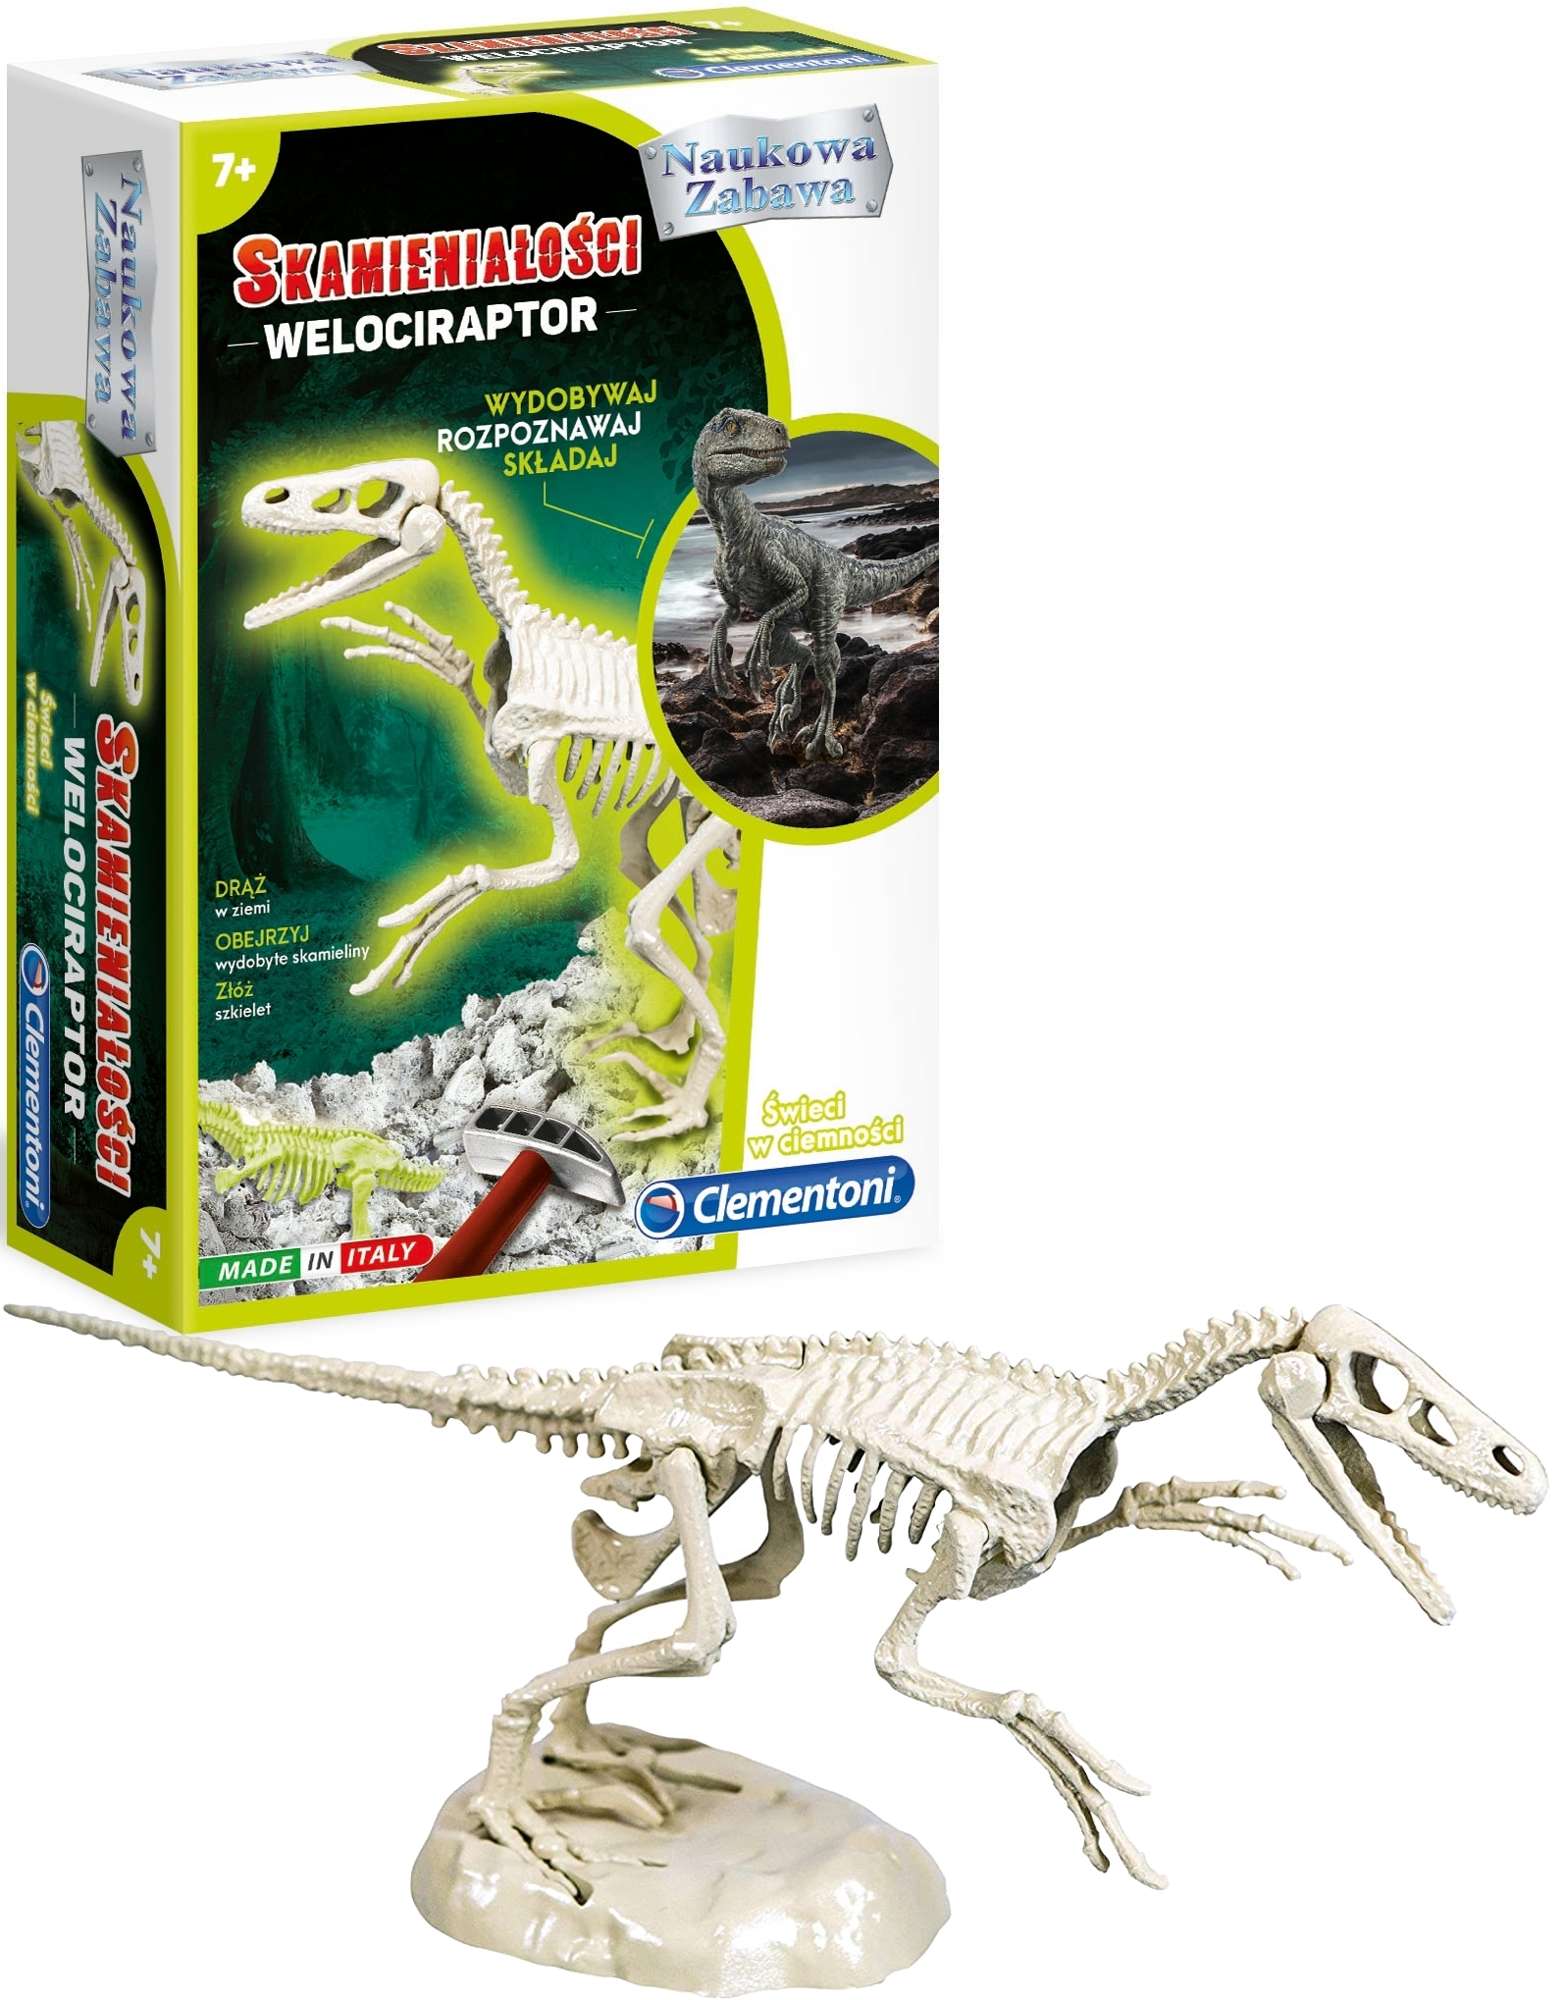 Naukowa Zabawa Skamieniaoci Velociraptor fluorescencyjny